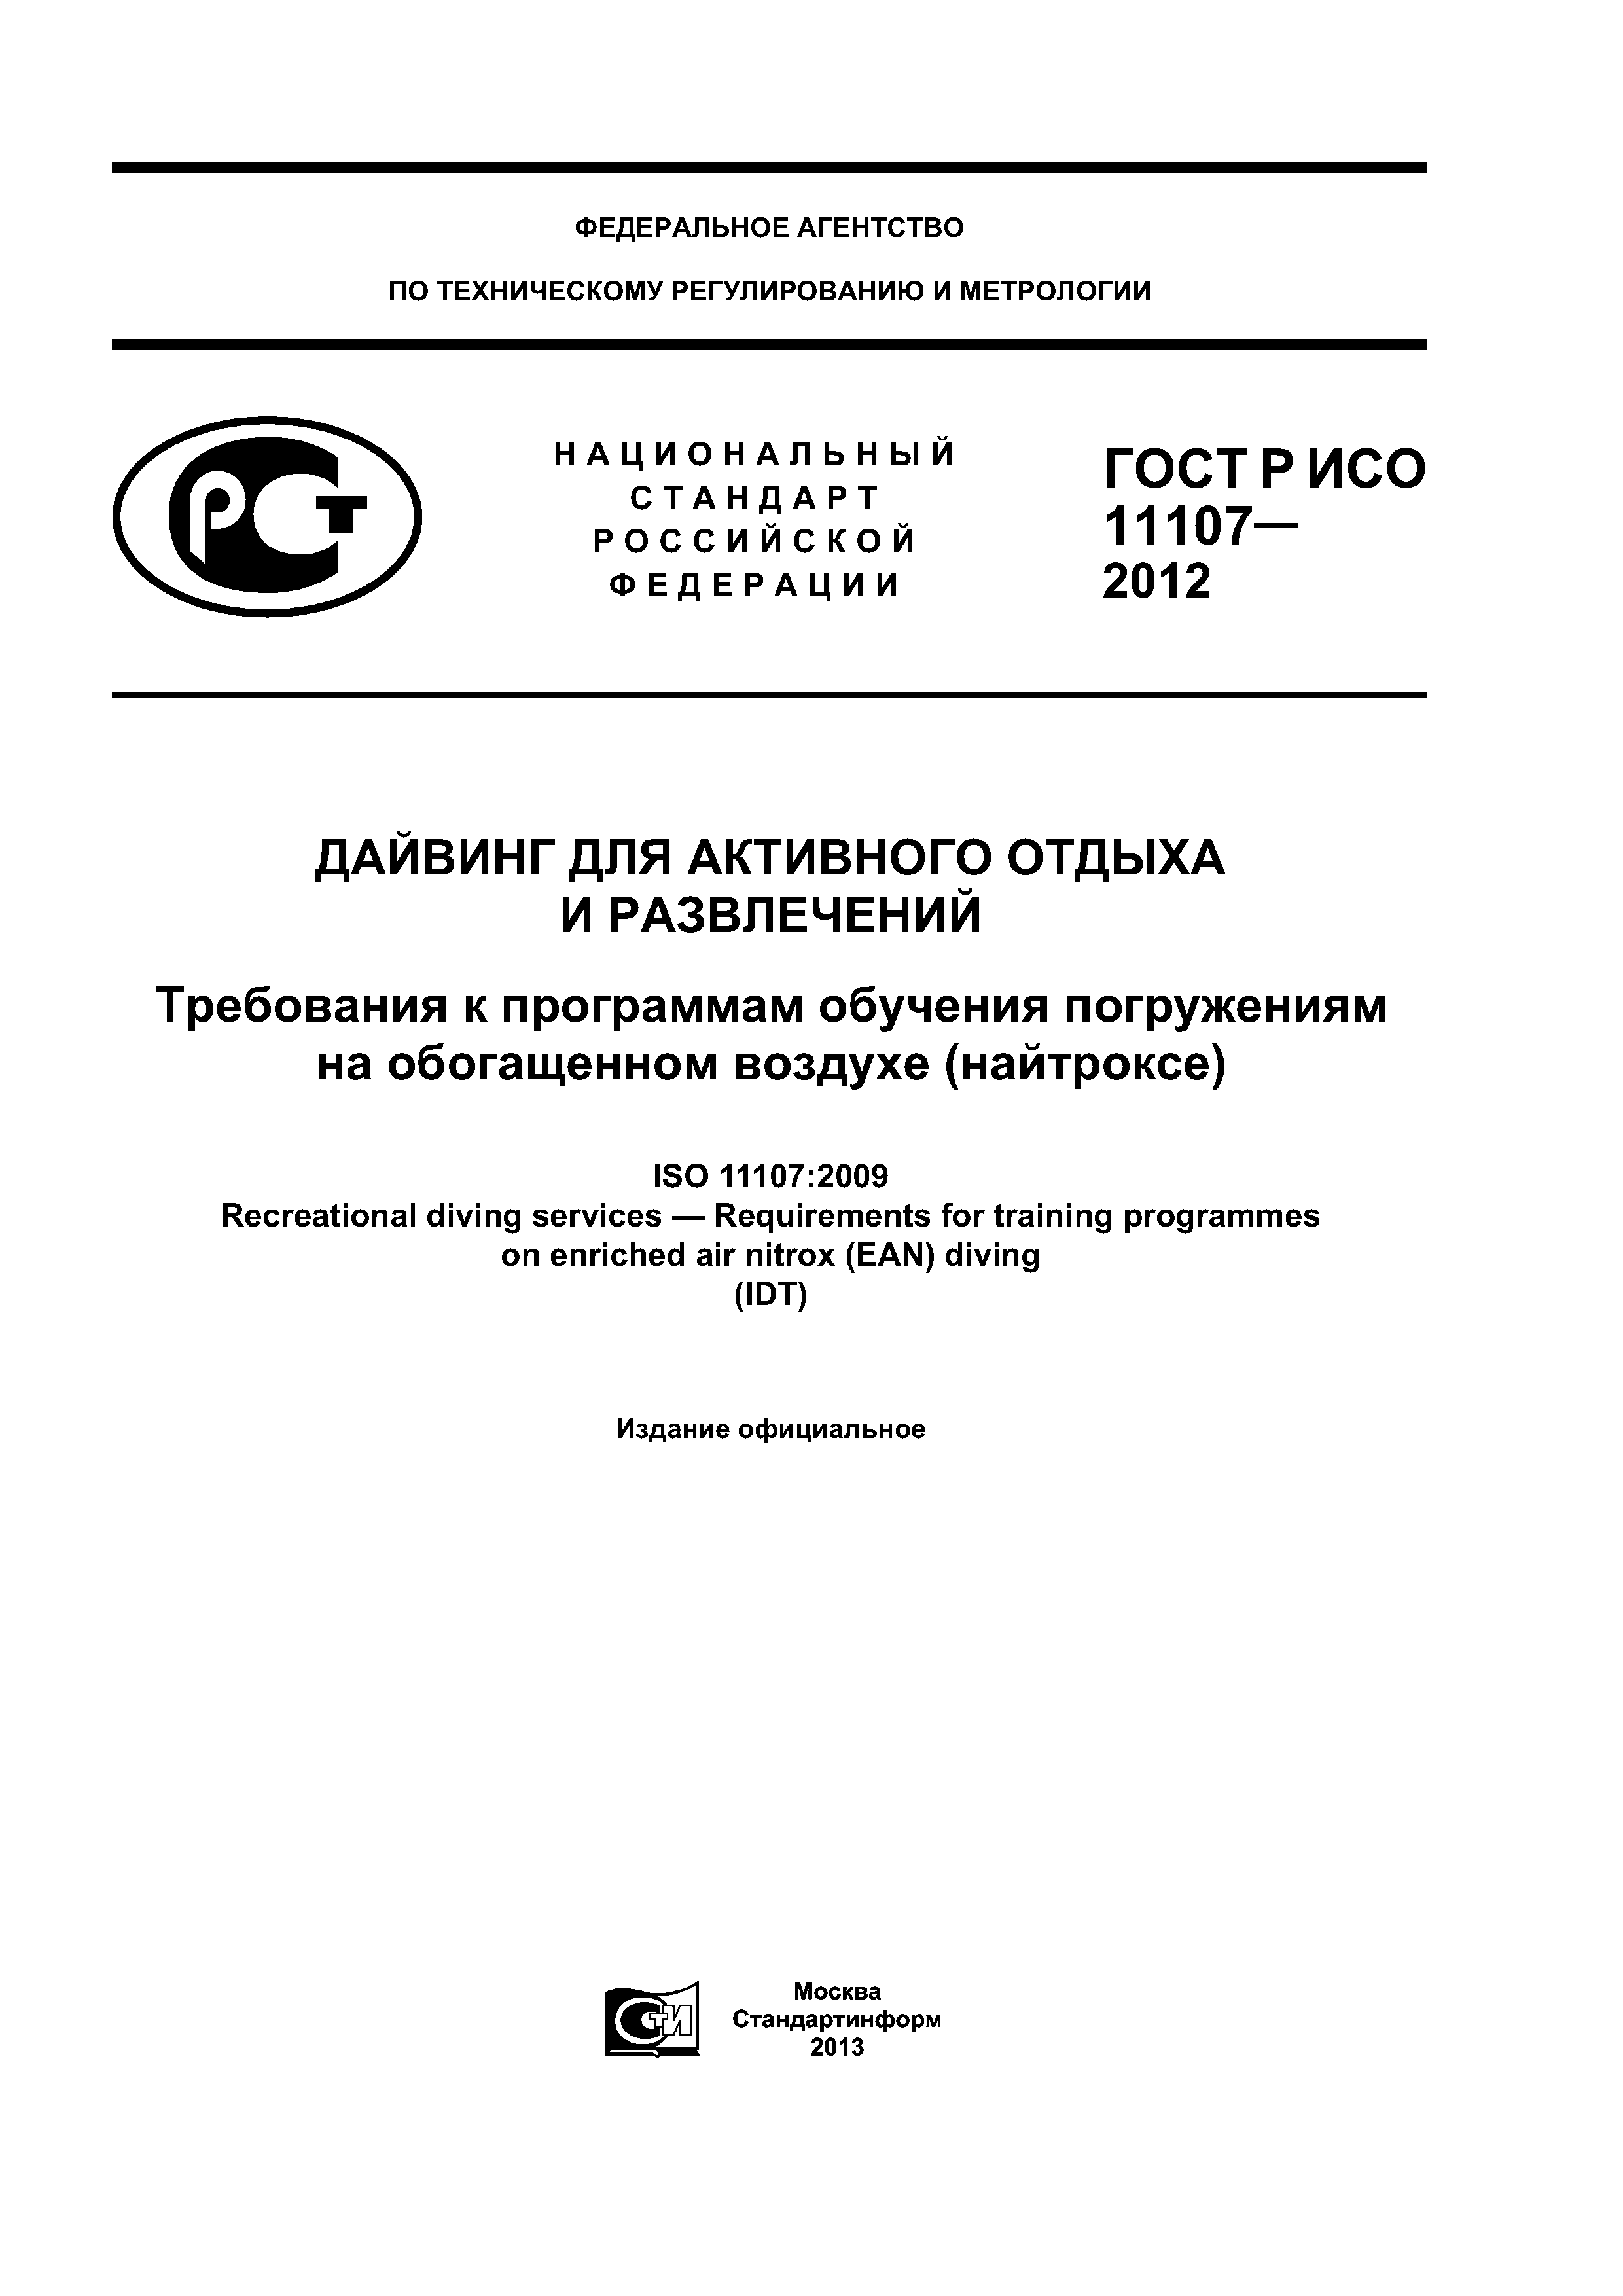 ГОСТ Р ИСО 11107-2012